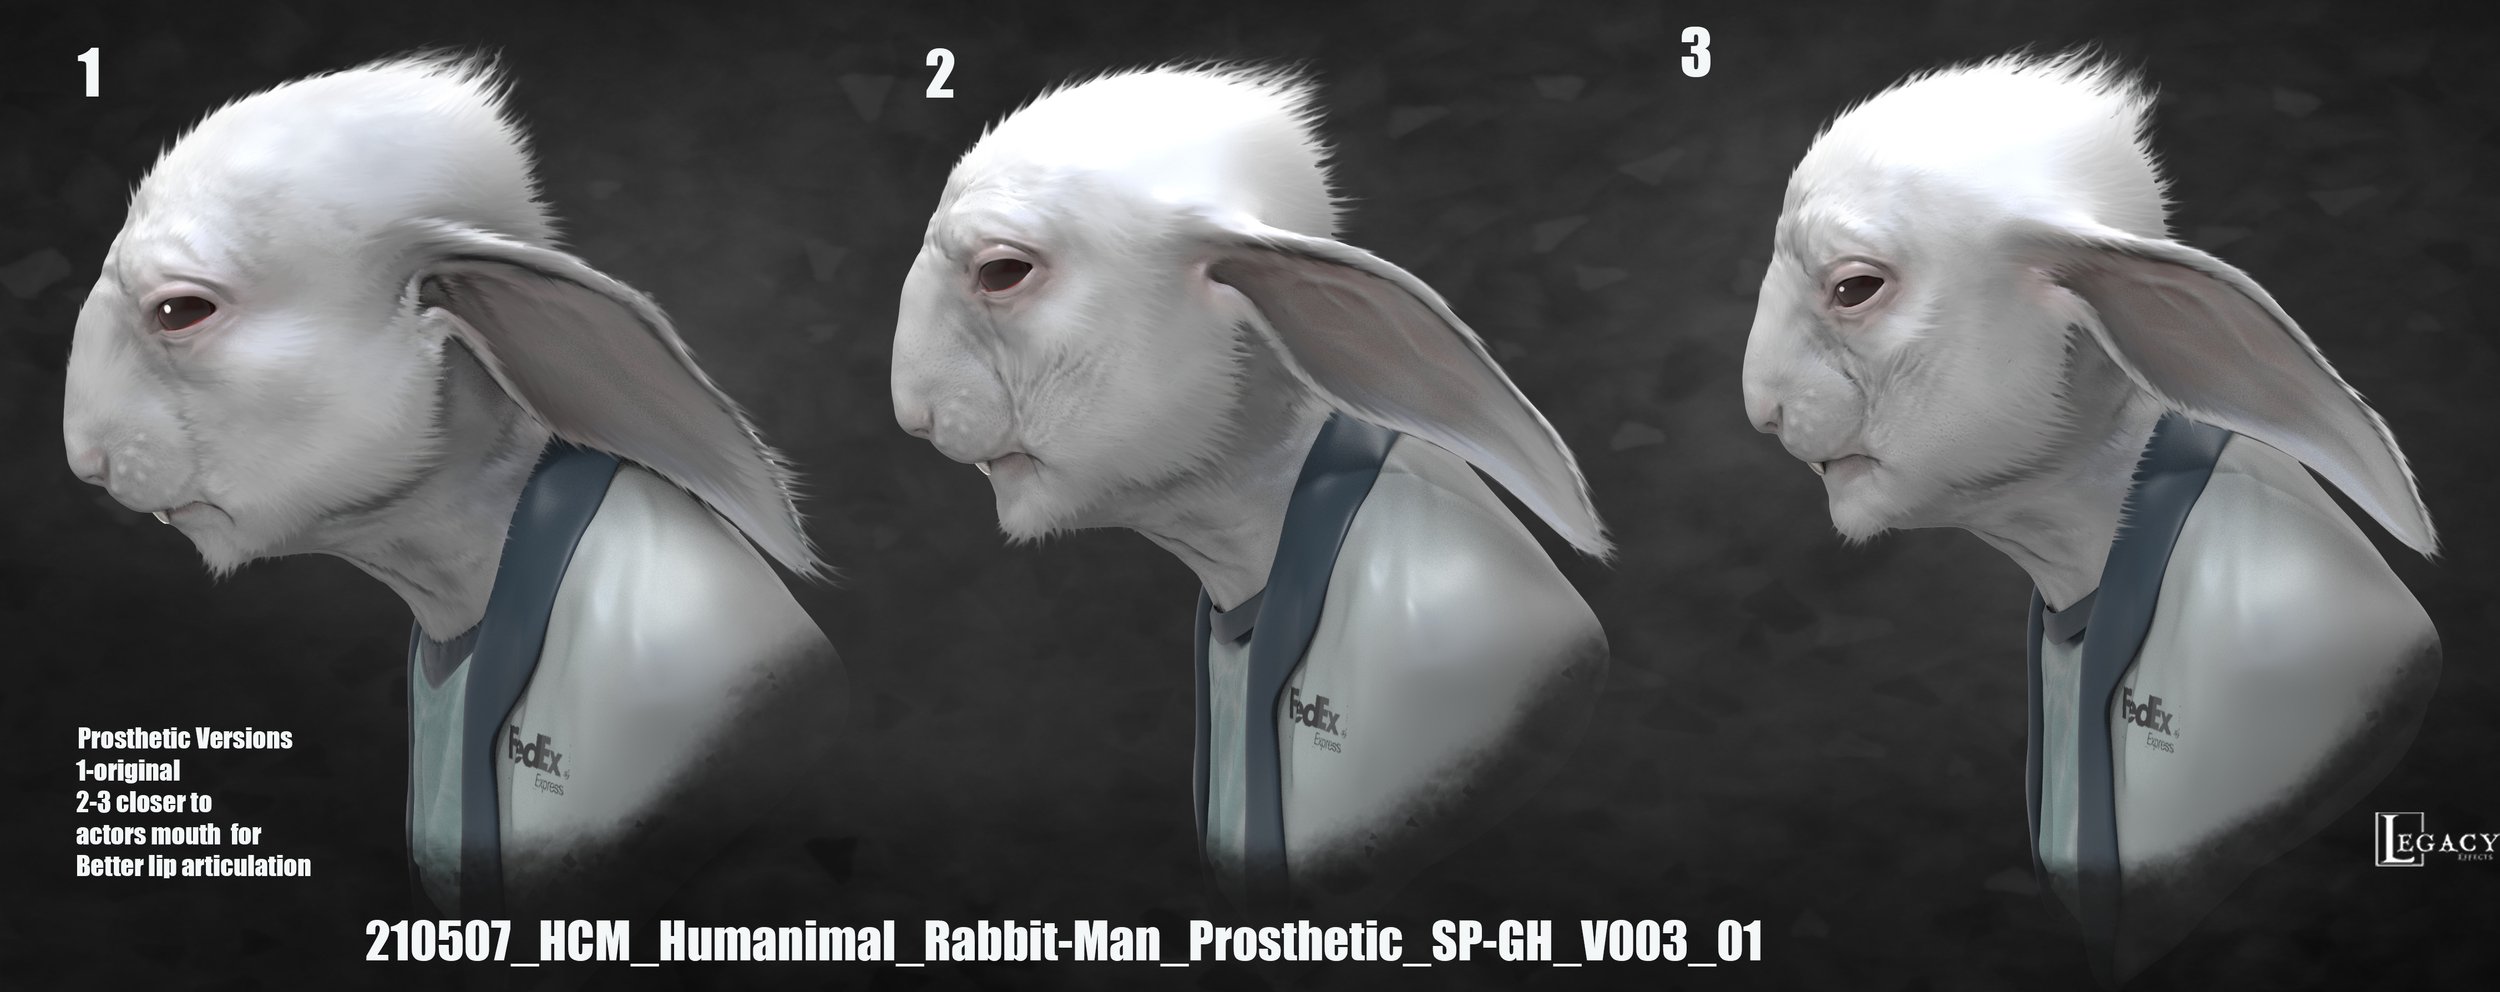 210507_HCM_Humanimal_Rabbit-Man_Prosthetic_SP-GH_V003_01.jpg